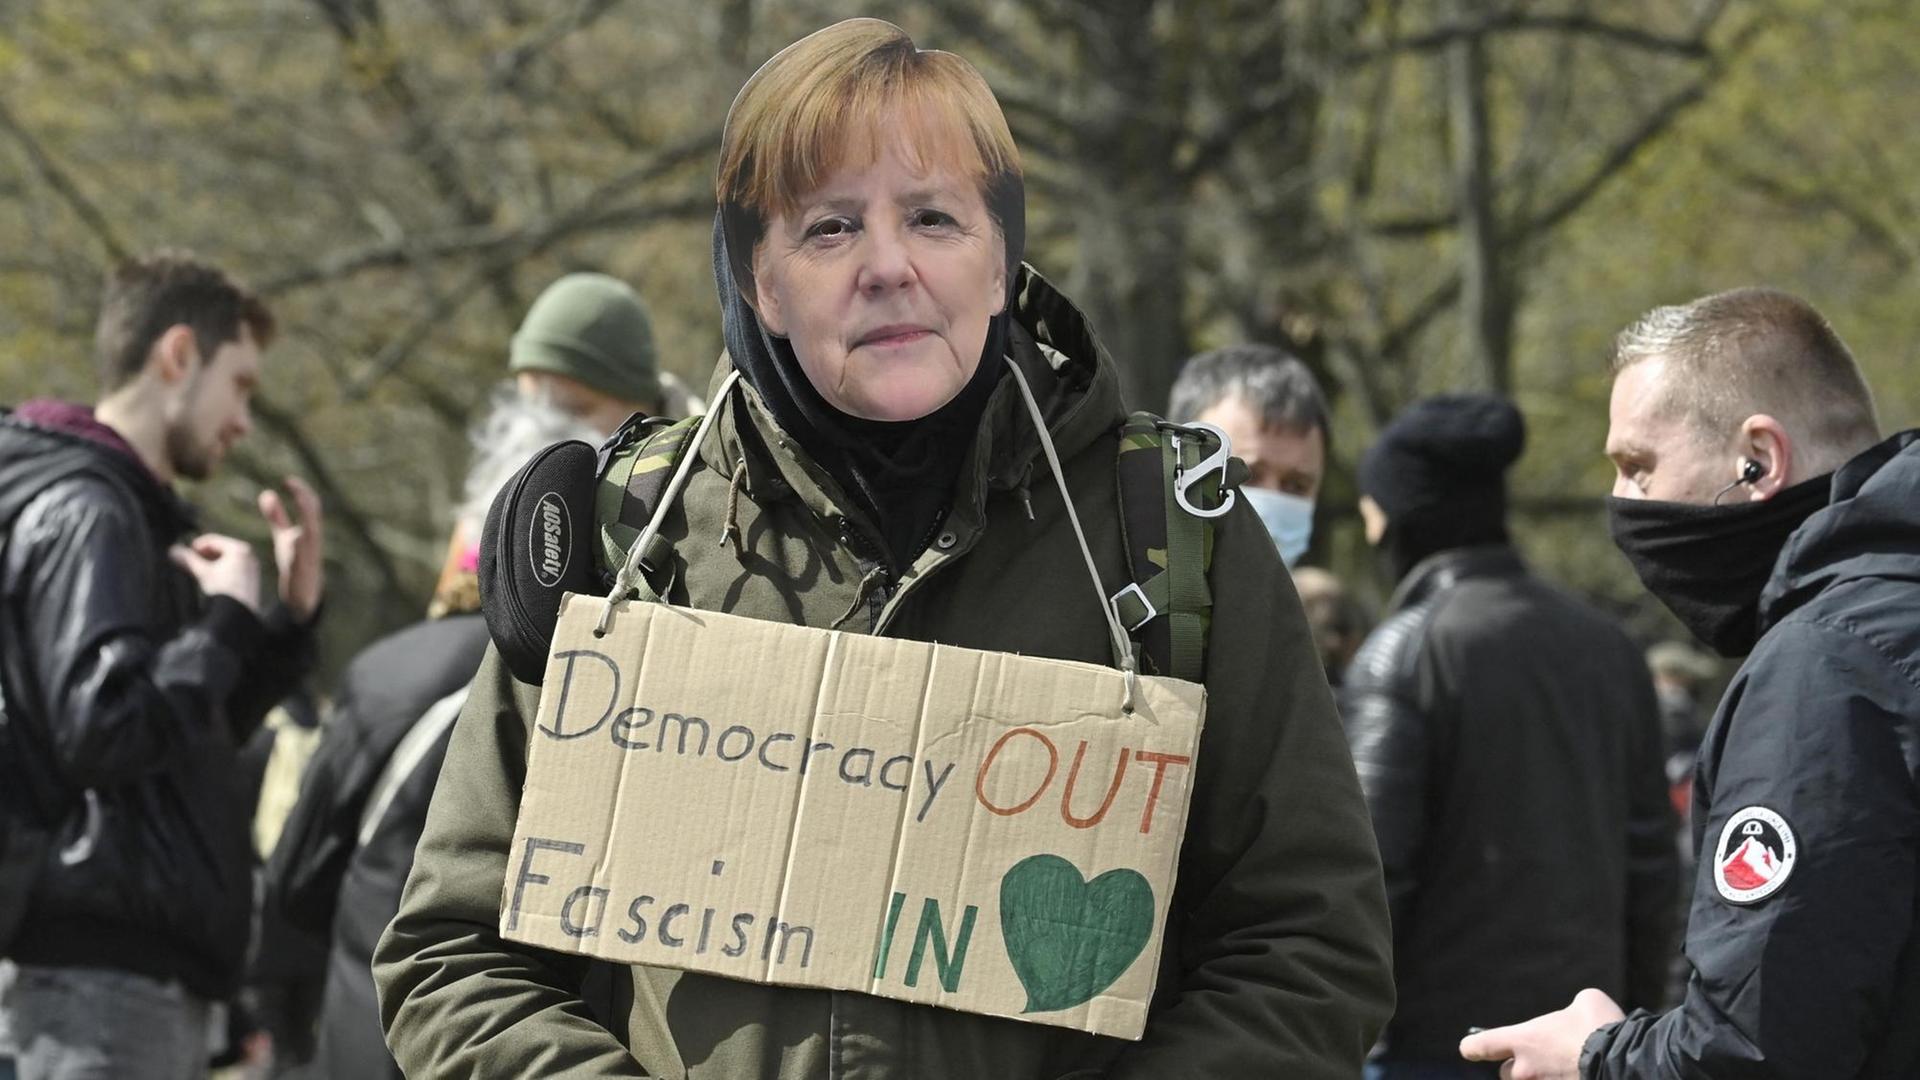 Ein Mann auf einer Querdenker Demonstration trägt eine Angela Merkel Maske und hat ein Schild um den Hals hängen: "Democracy out, Fascism in". Berlin 13. April 2021.